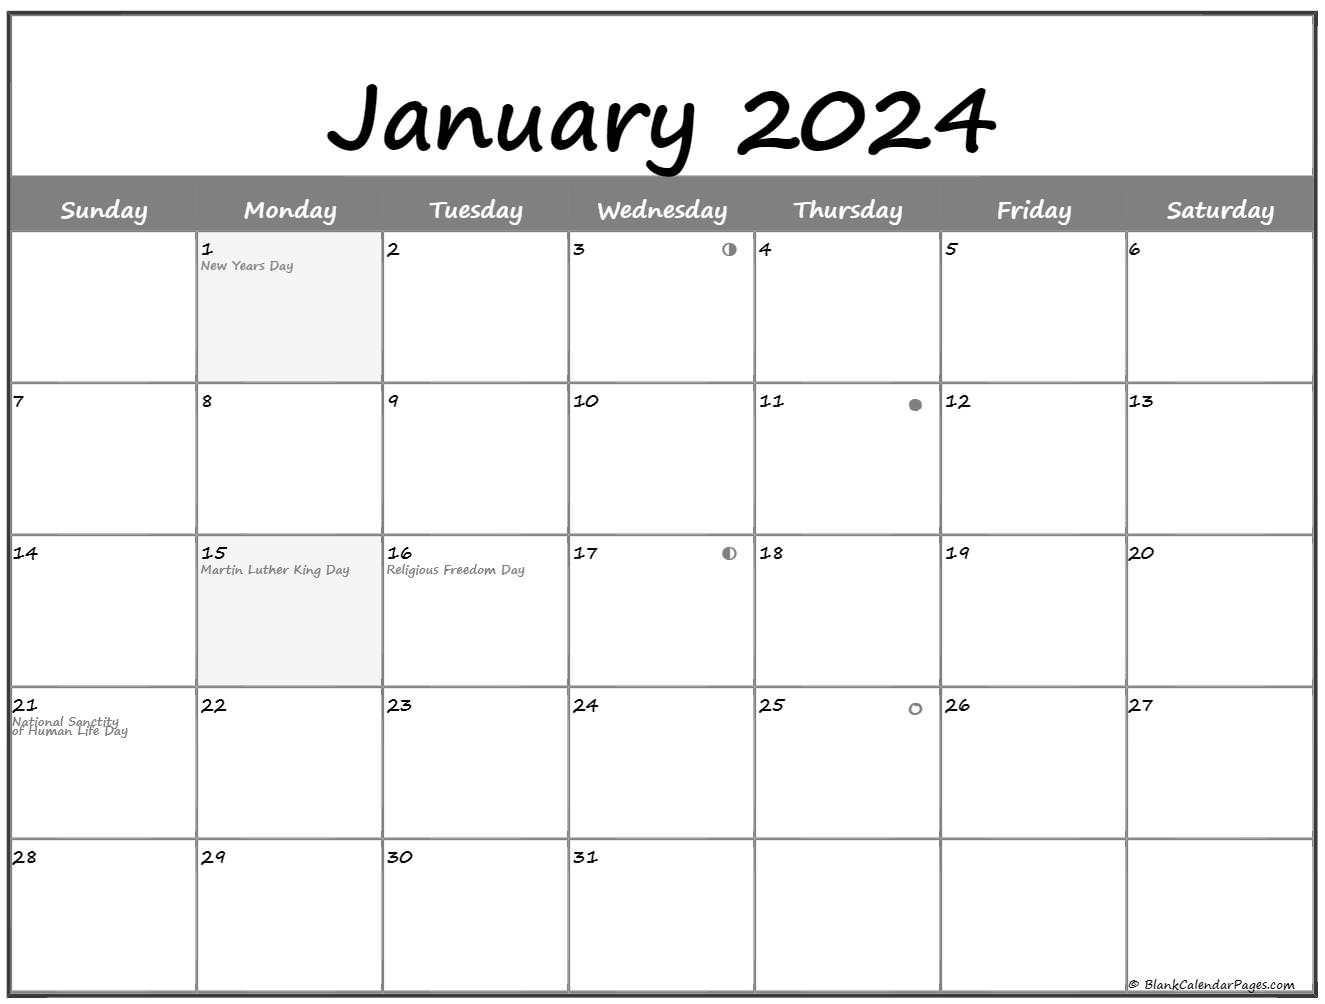 January 2022 Lunar Calendar Moon Phase Calendar